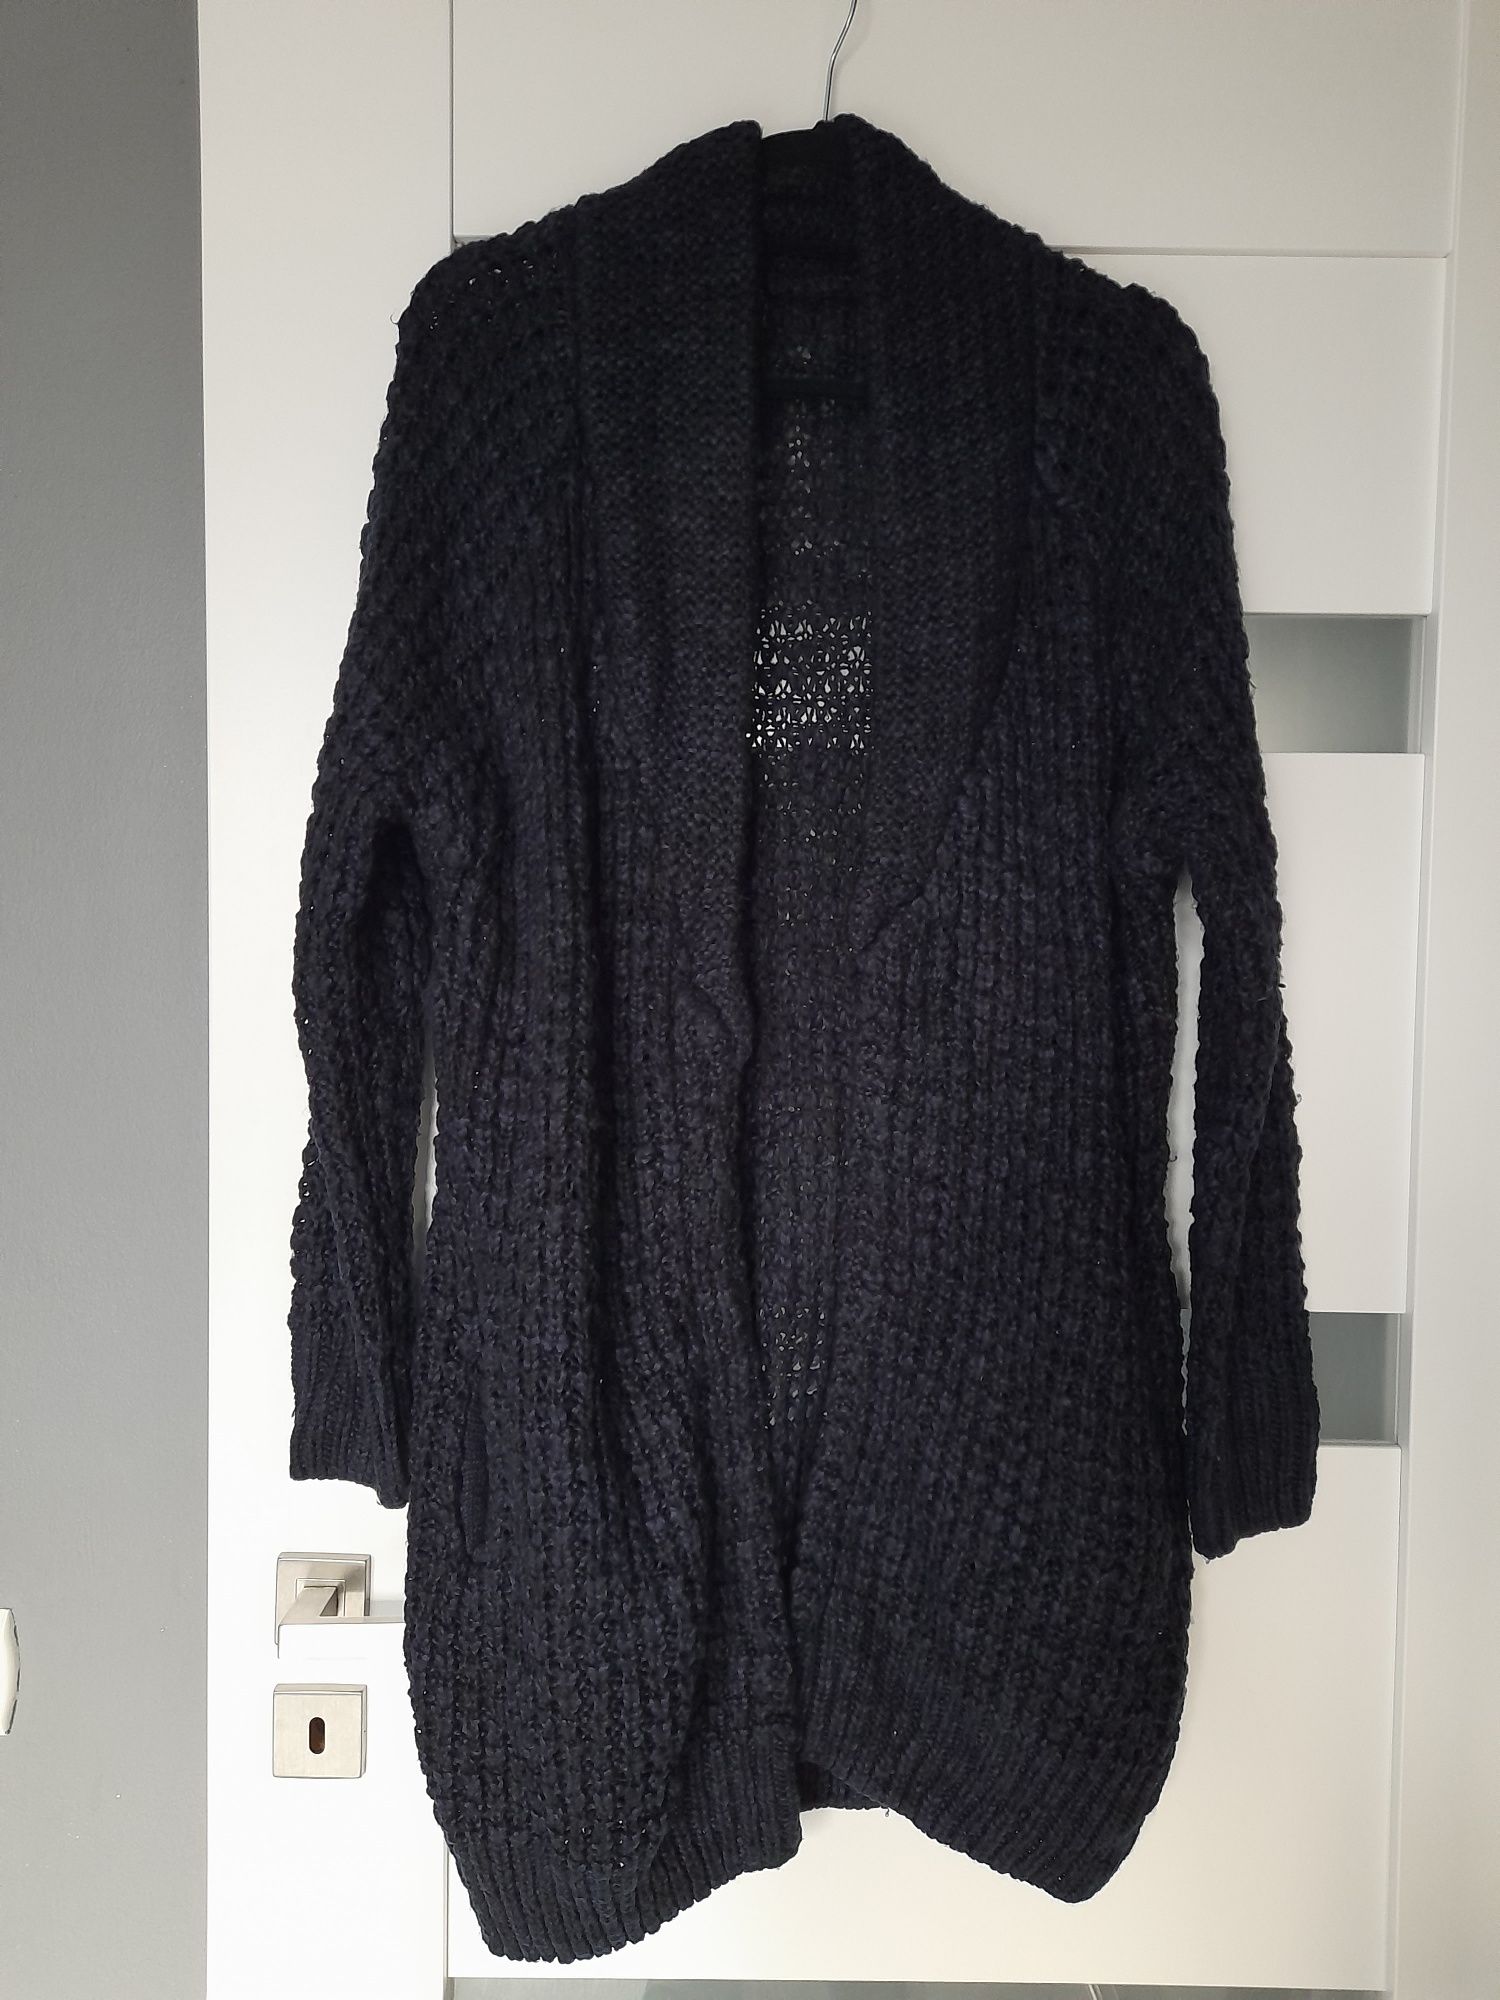 Granat ciemny kardigan akrylowy S M H&M gruby miesisty sweter sweterek